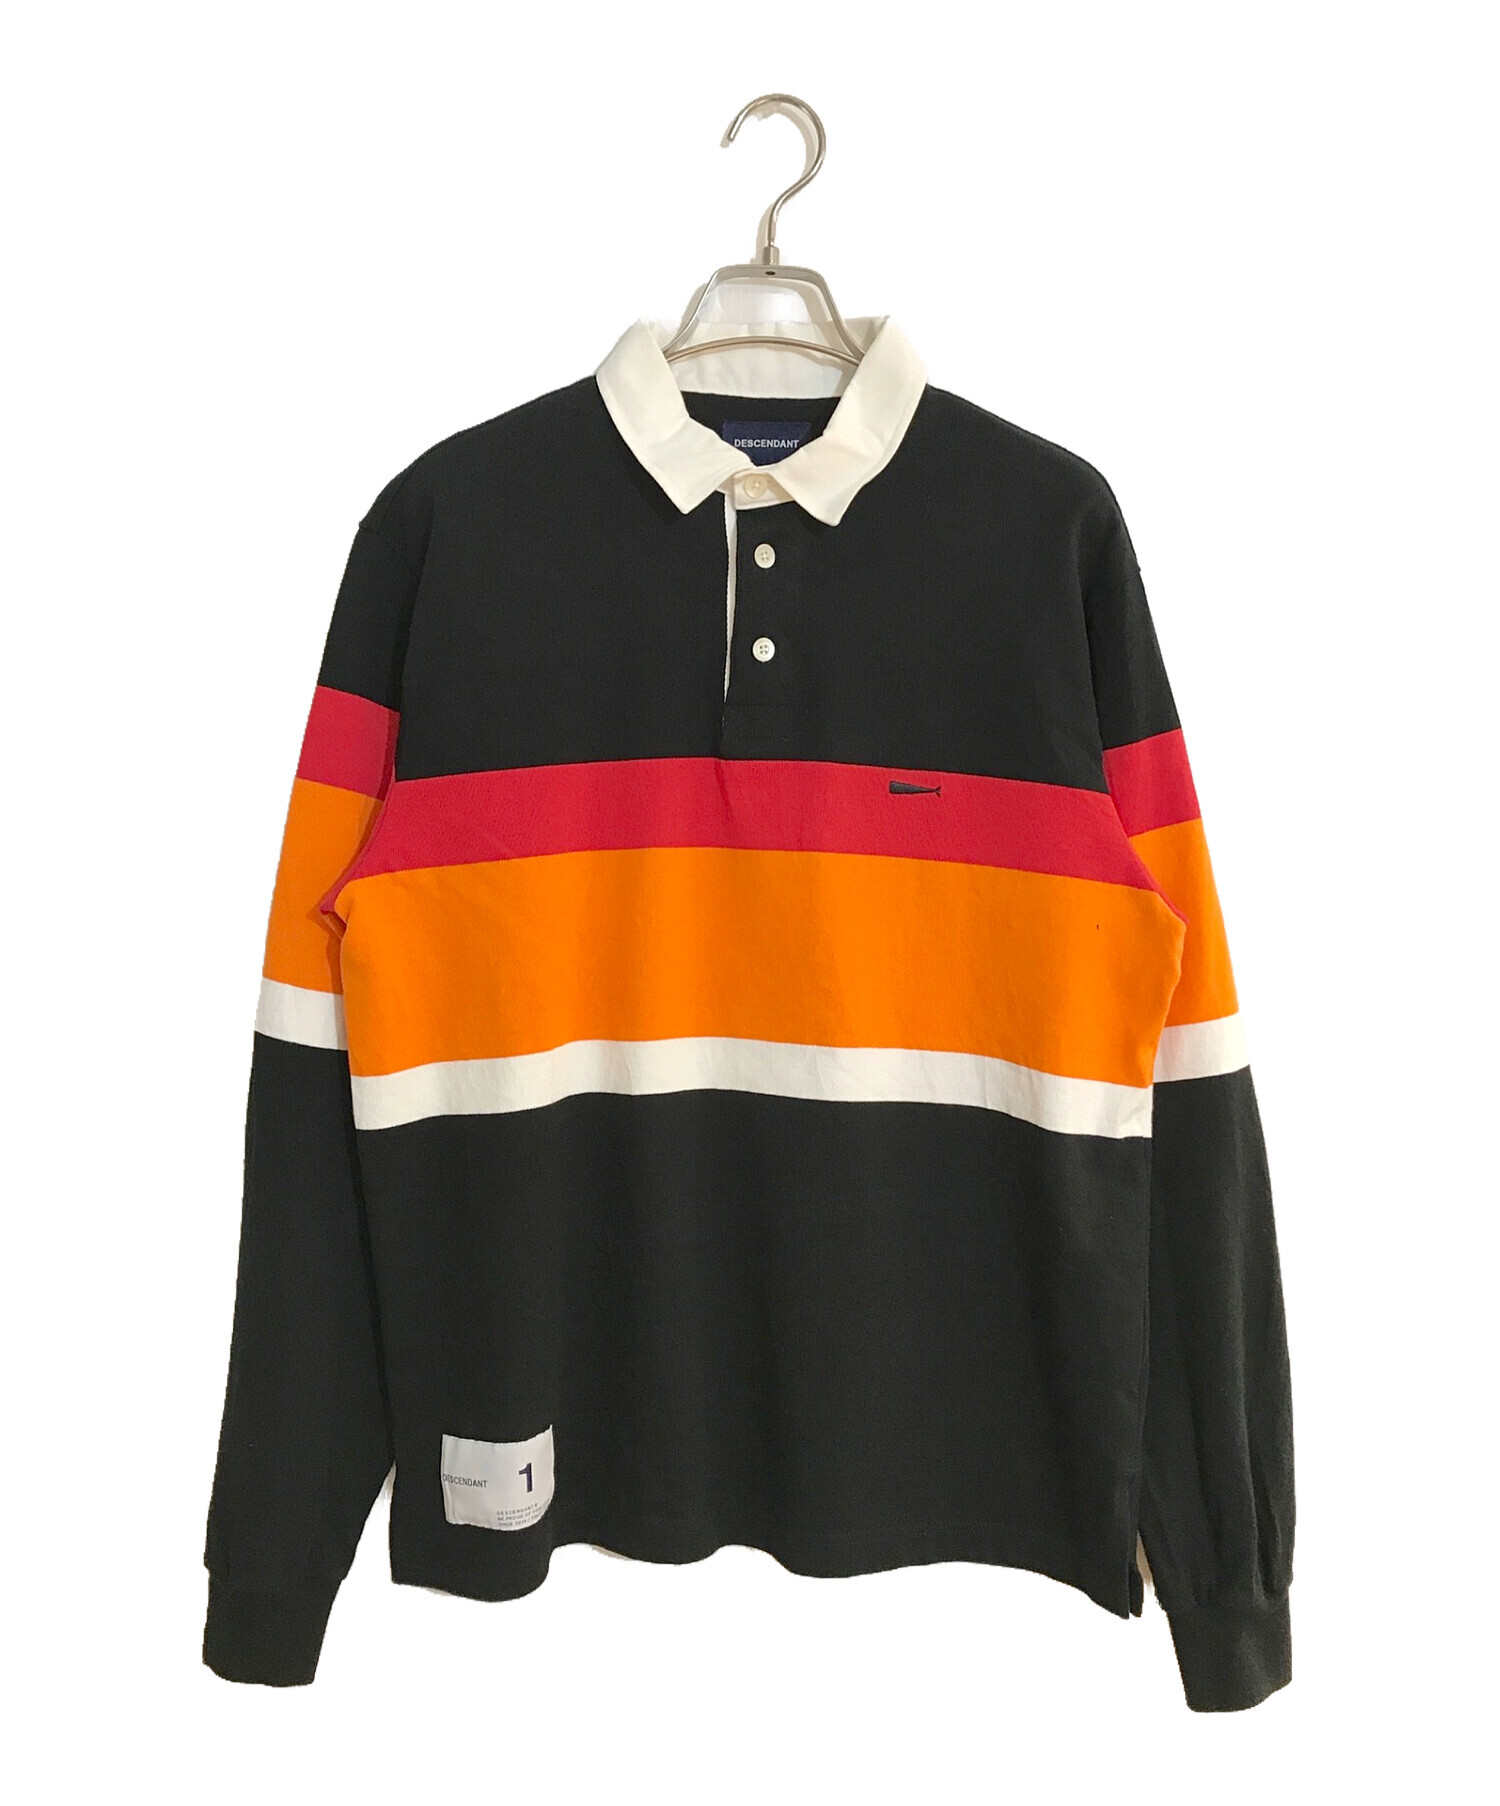 販売直販 DESCENDANT PUBA LS SHIRT XL ナイロンP/Oシャツ | artfive.co.jp